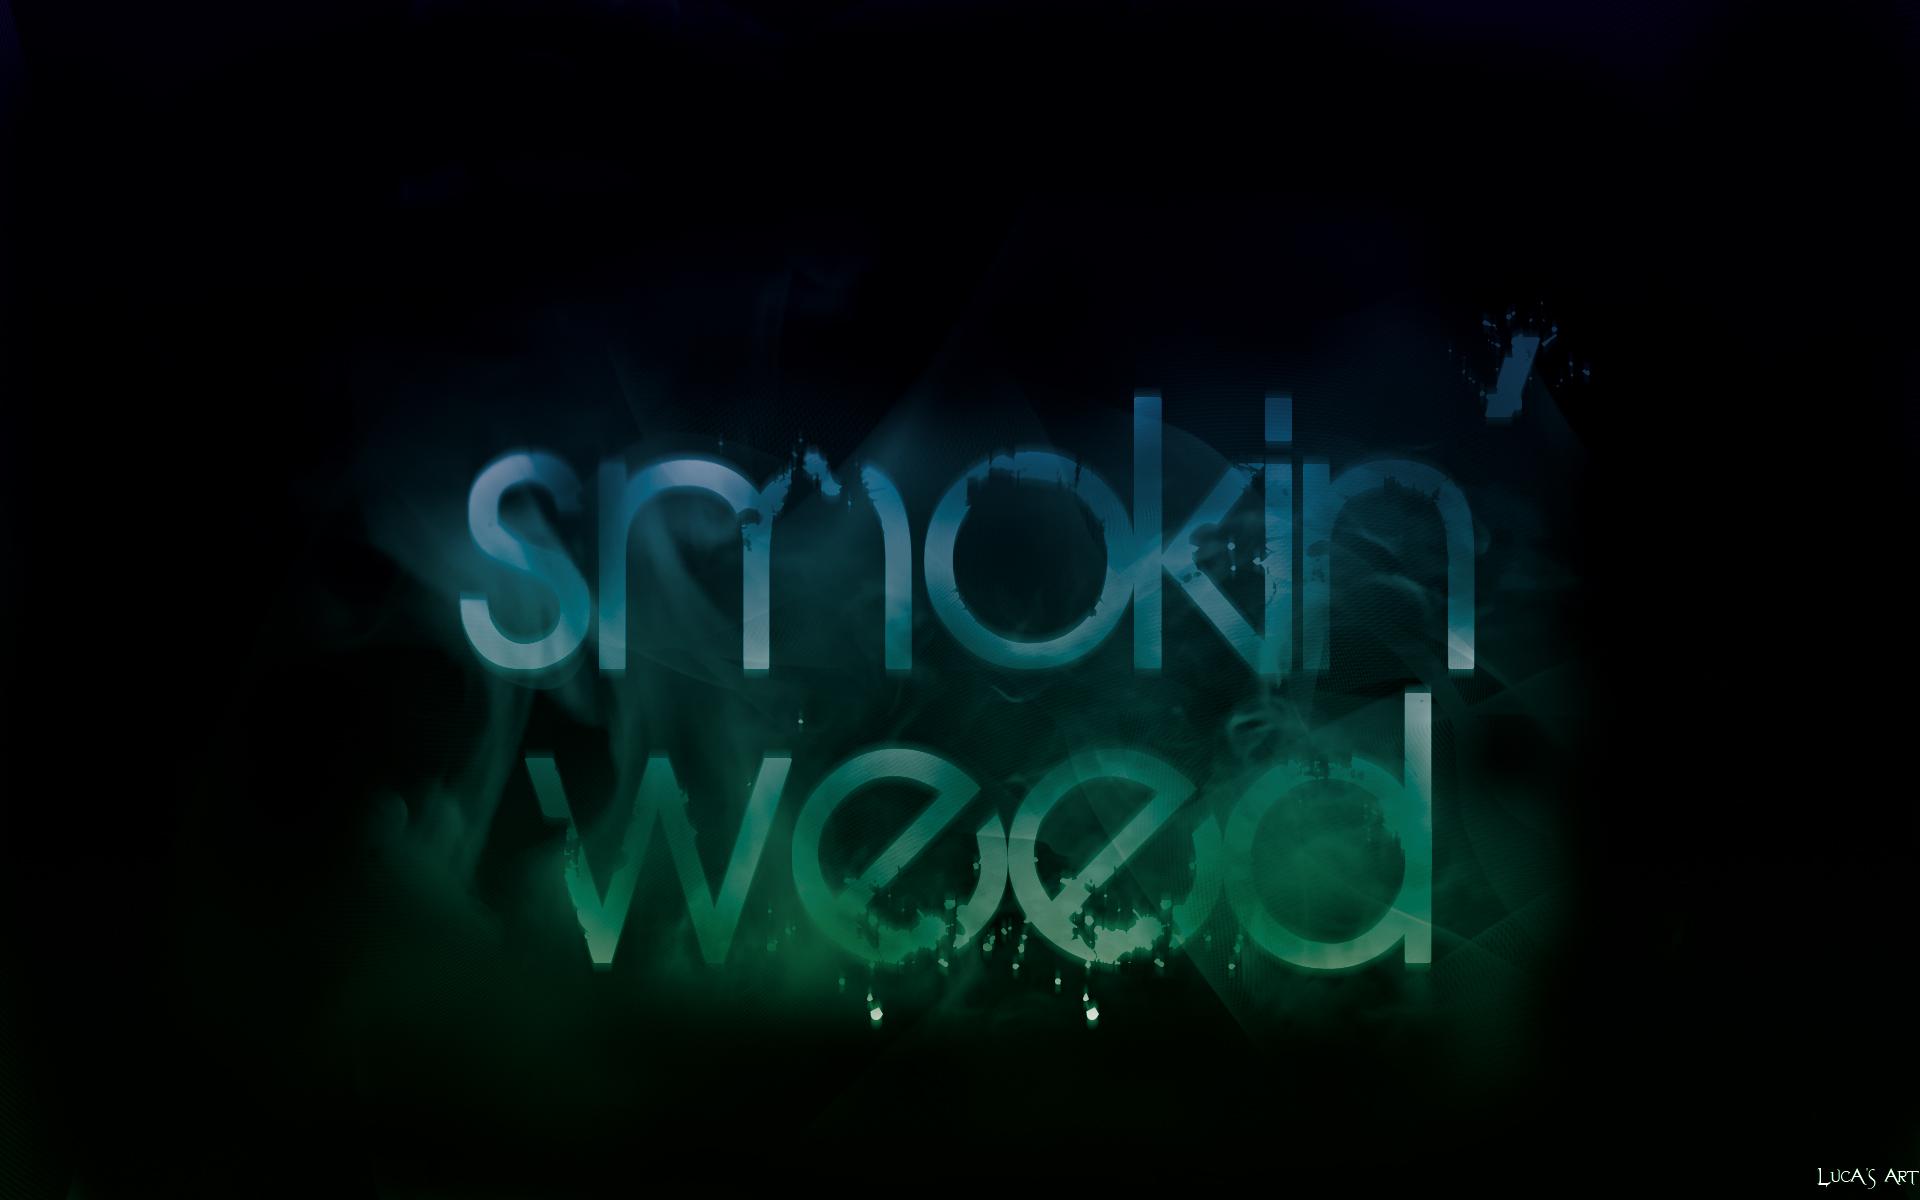 Smoking Weed Wallpaper